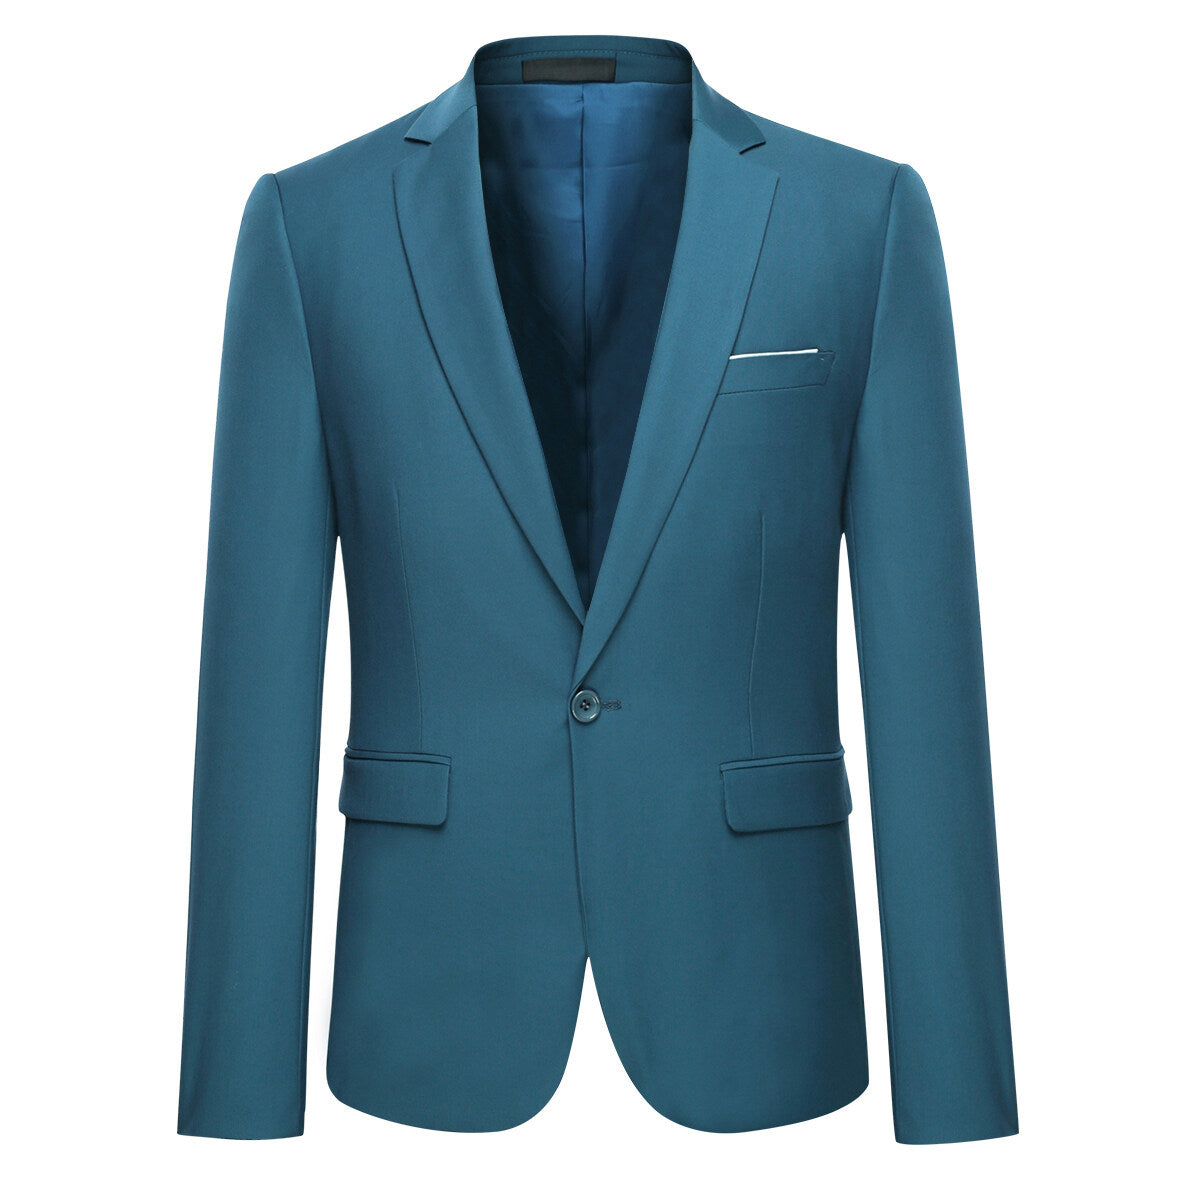 3-Piece One Button Formal Suit Blue Suit